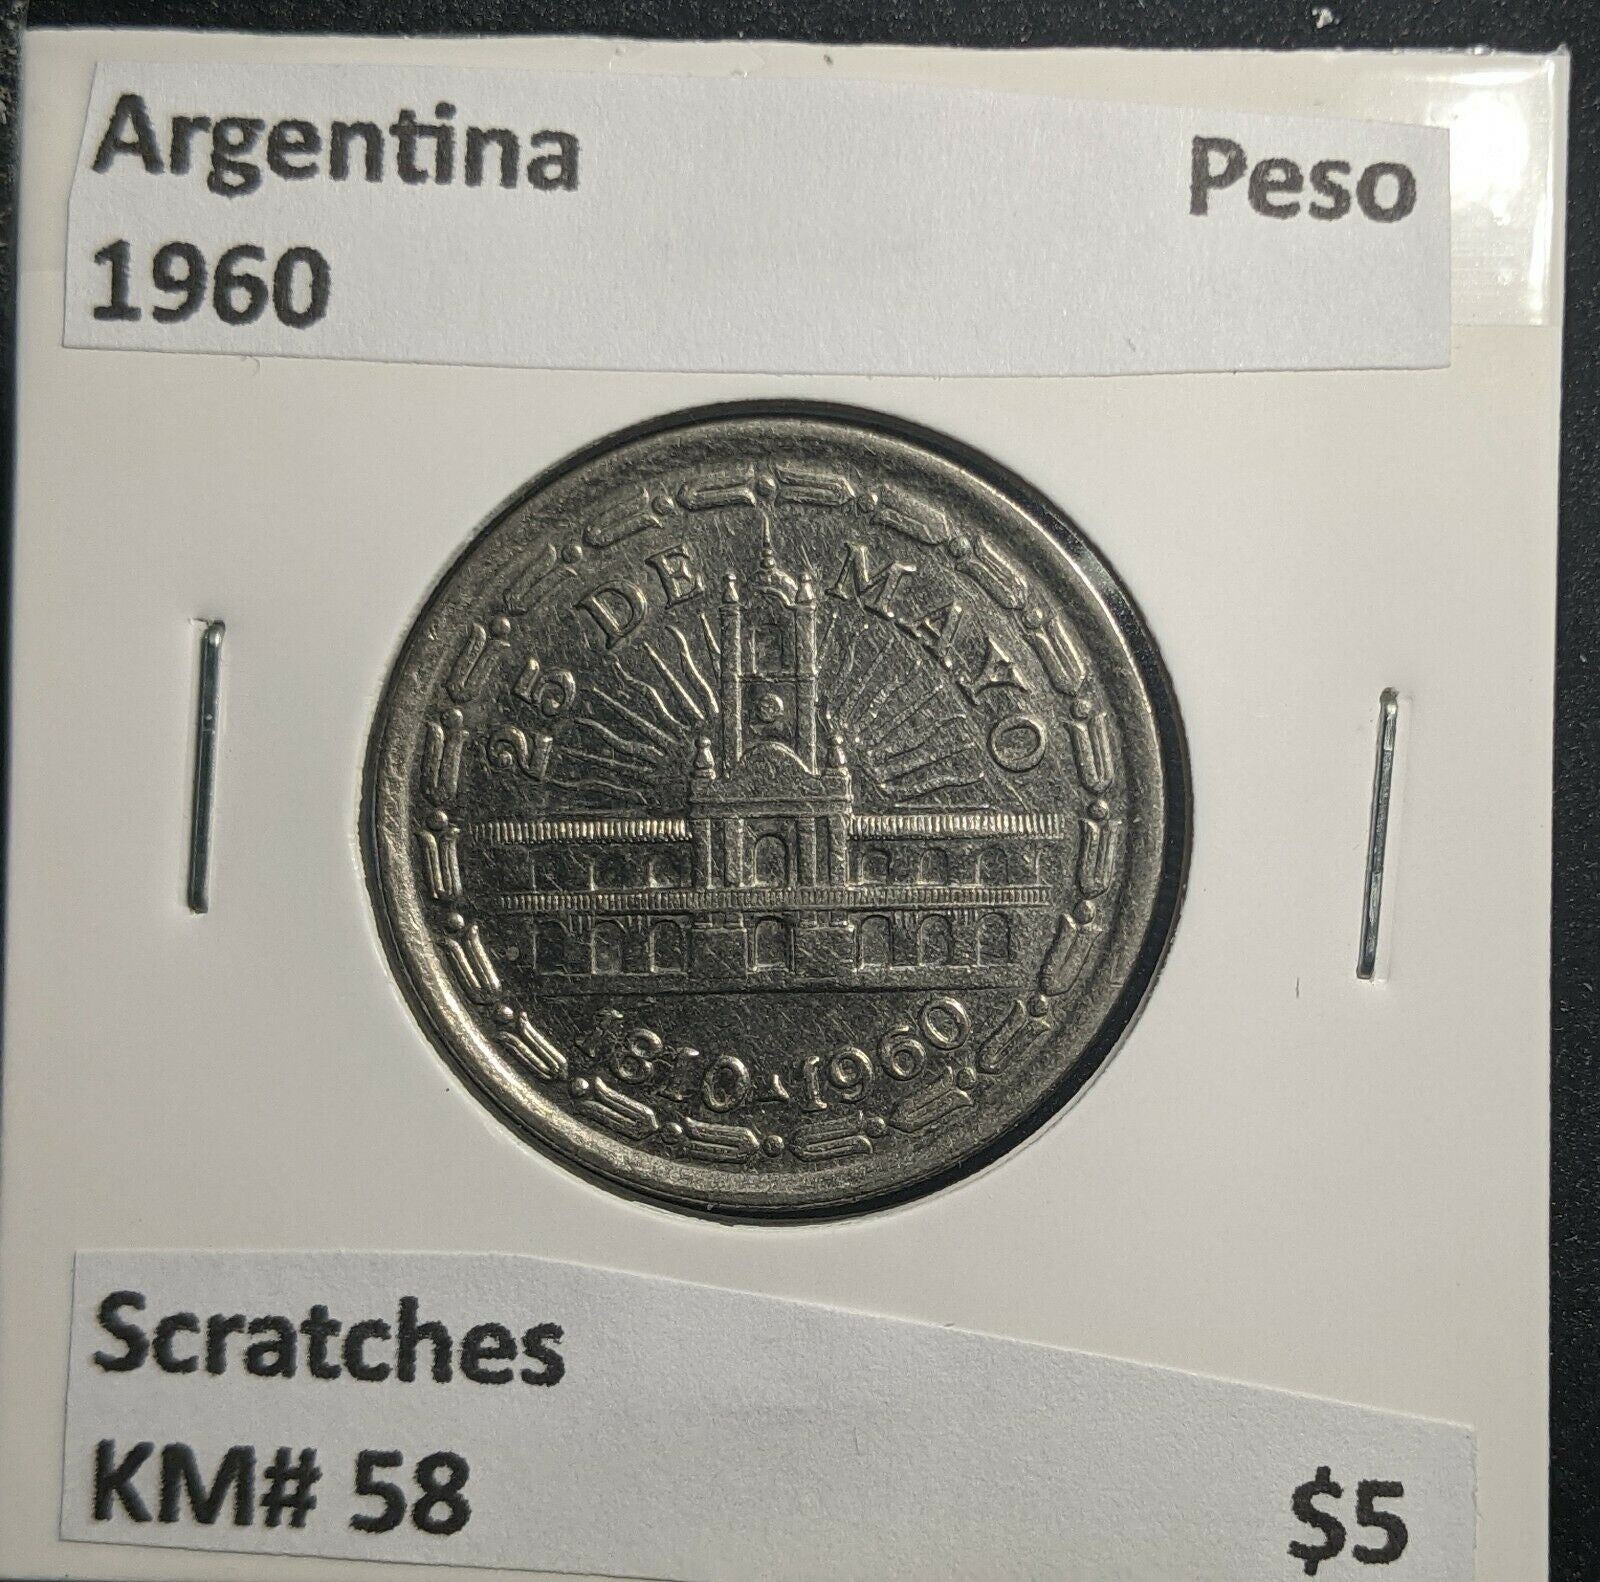 Argentina 1960 Peso KM# 58 Scratches #398 1B